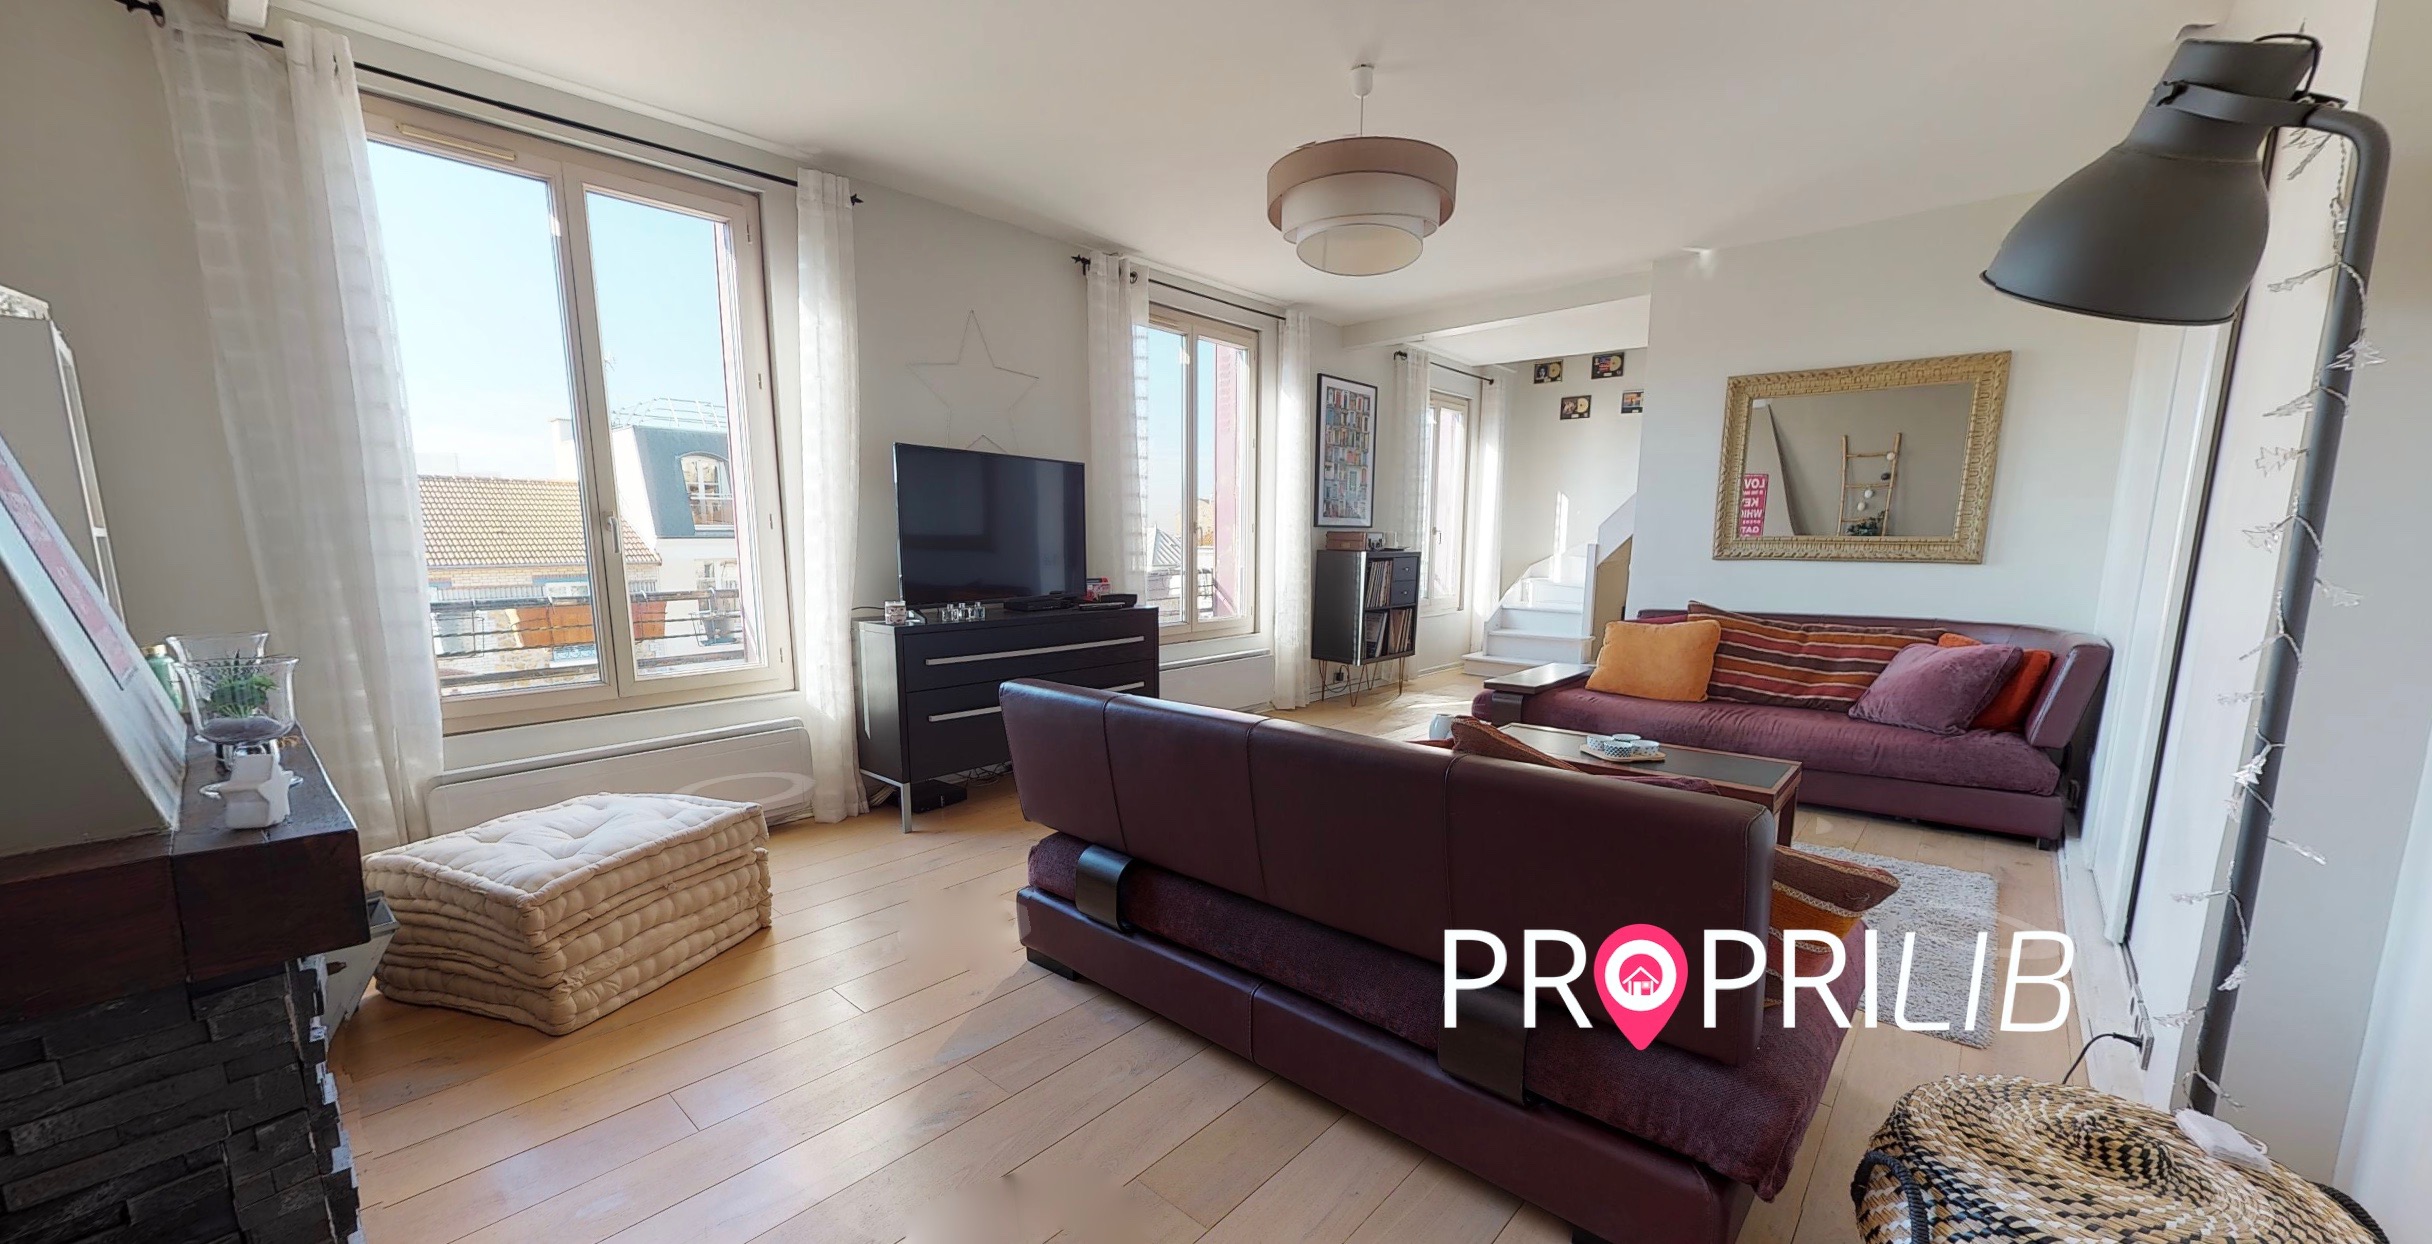 PropriLib l’agence immobilière en ligne à prix fixe vend cet appartement à Nogent-sur-Marne